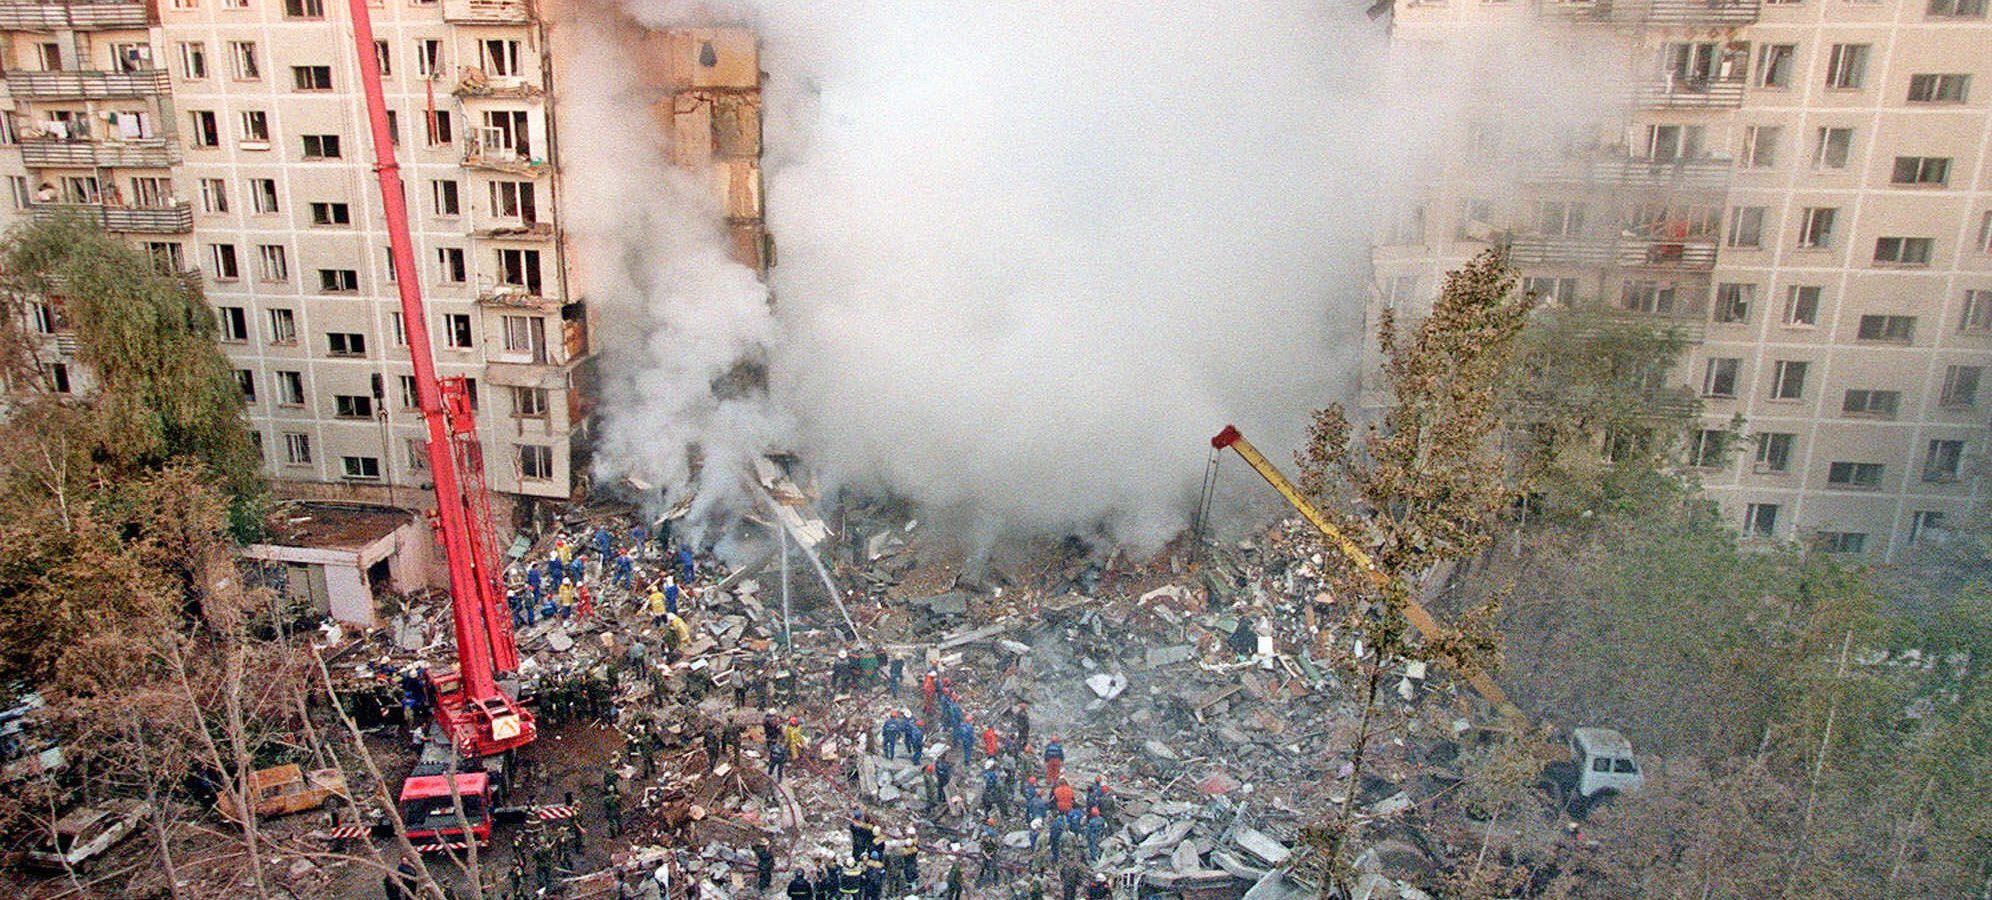 Взрывы жилых домов в москве 1999. Теракт 1999 года в Москве на улице Гурьянова. Взрыв дома на улице Гурьянова в Москве 1999. Теракт 9 сентября 1999 года в Москве.